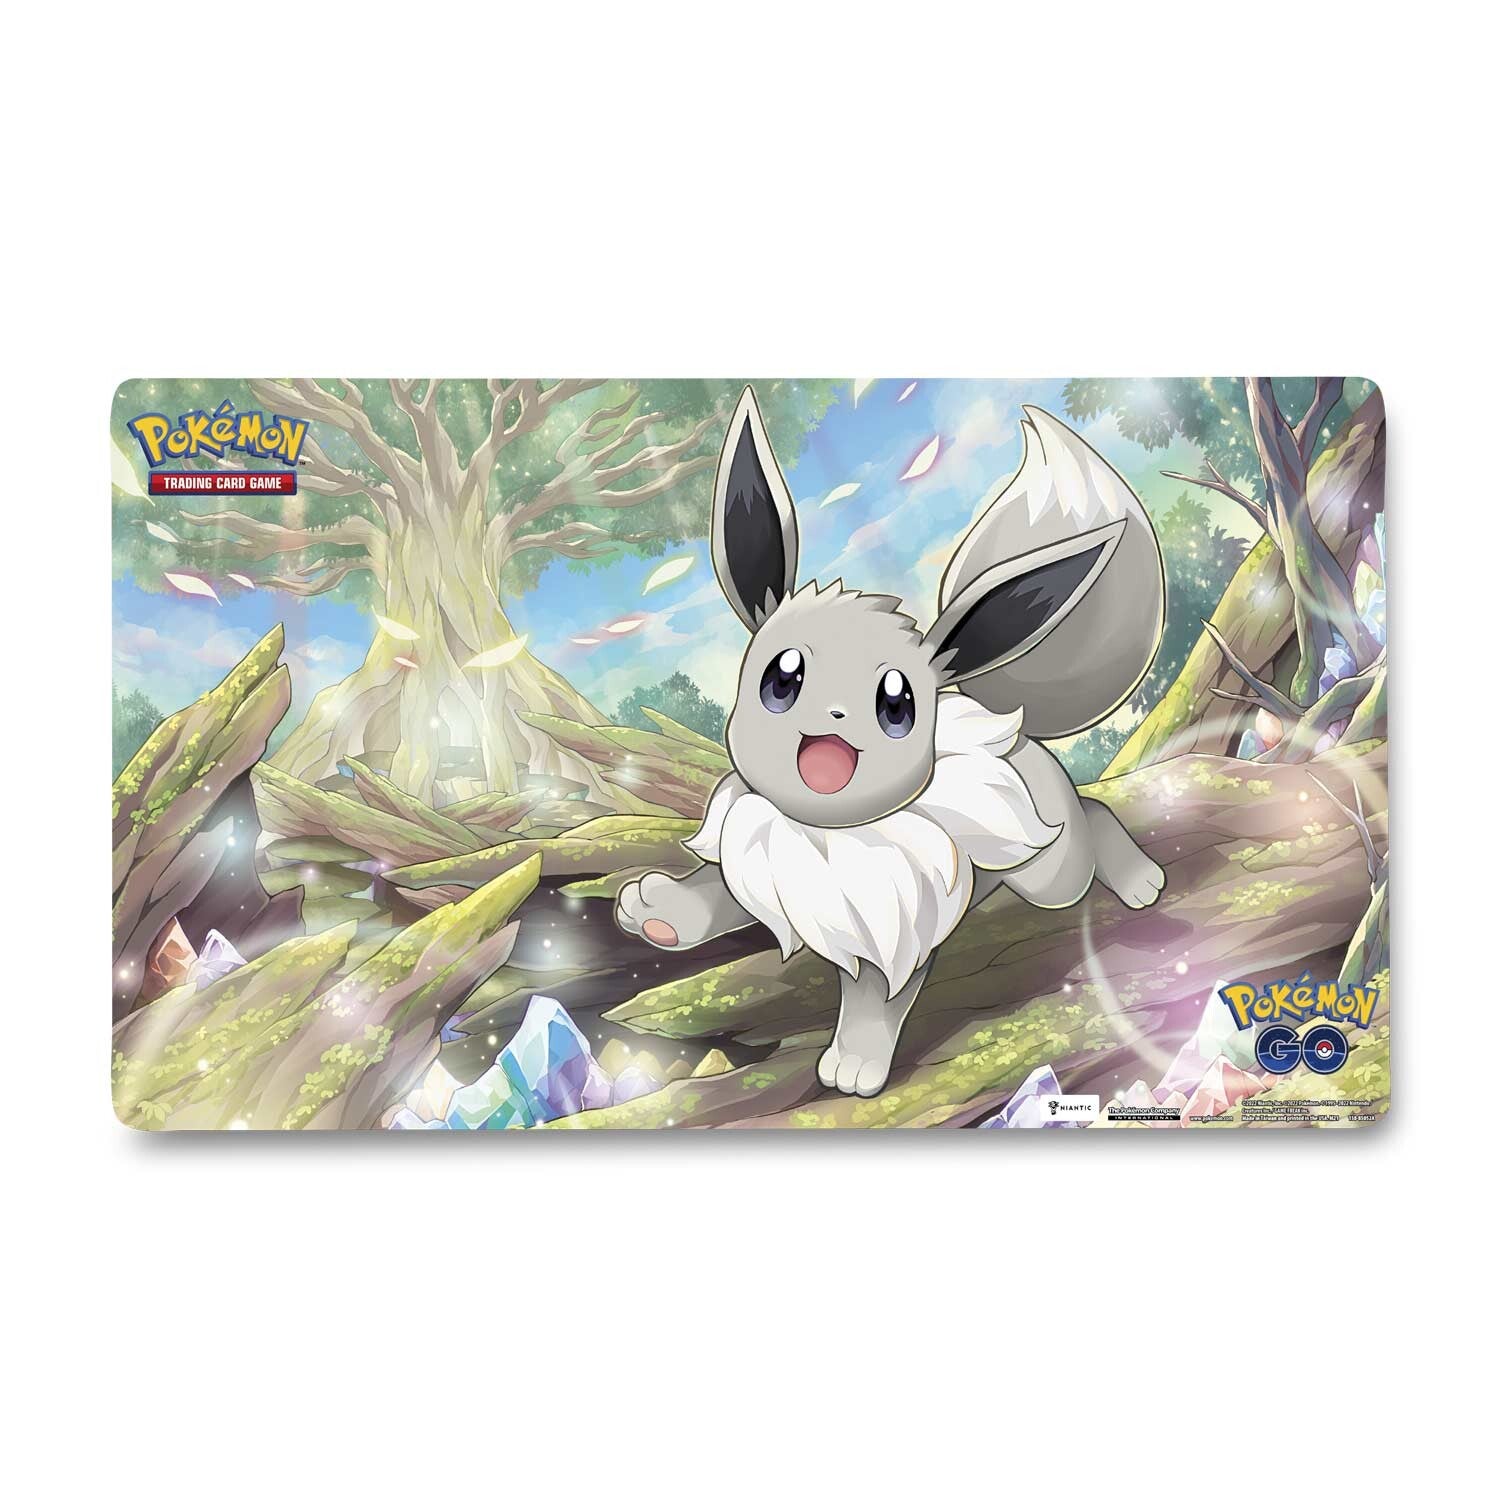 Pokémon TCG: Pokémon GO Premium Collection - Radiant Eevee Boxes & Cases